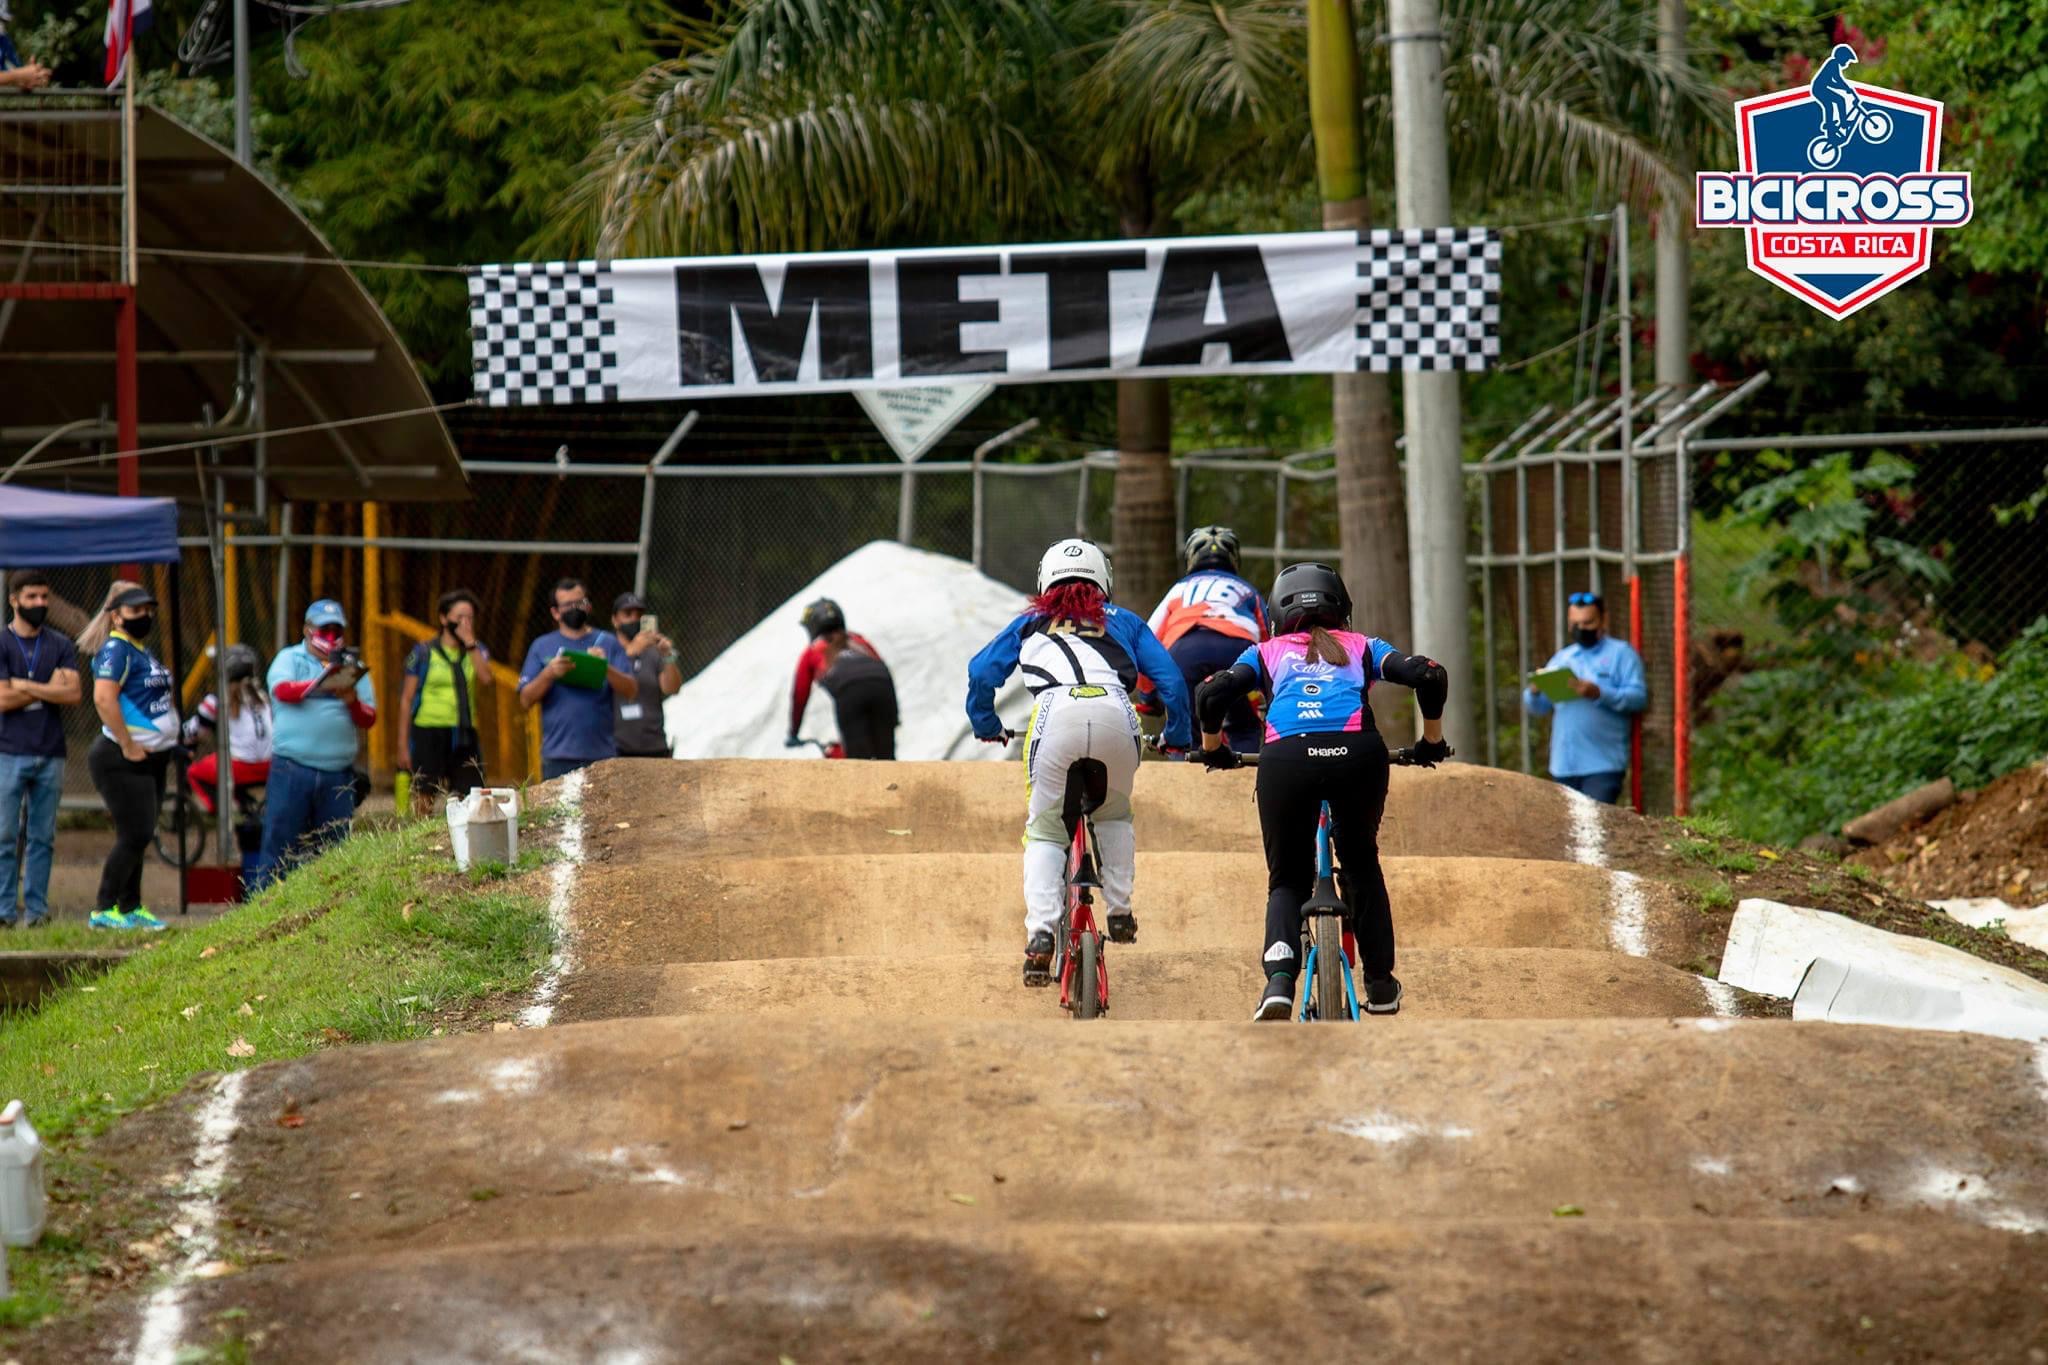 Campeonato Nacional de Bicicross se efectuará este domingo en el Parque de La Paz